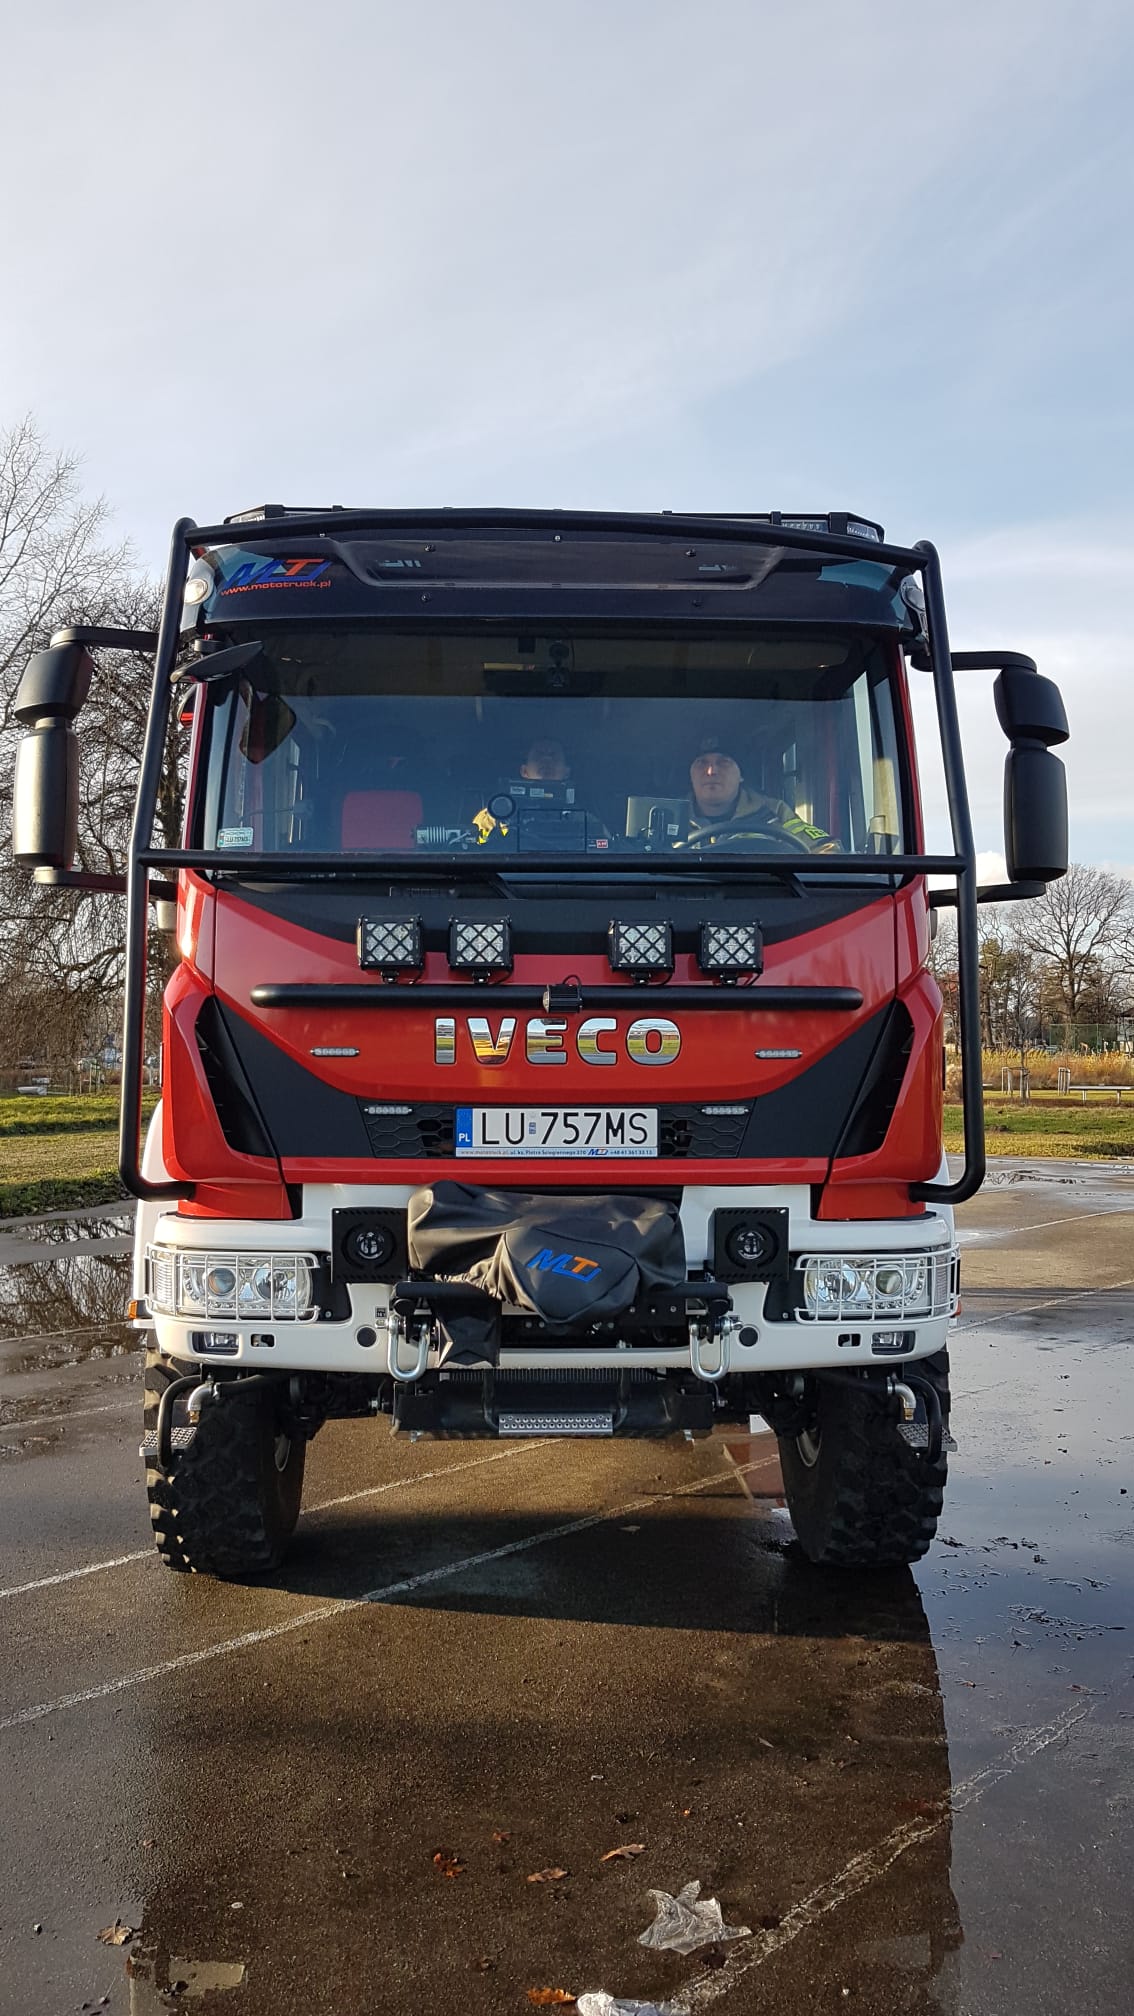 Nowy samochod ratowniczo – gaśniczy marki Iveco.